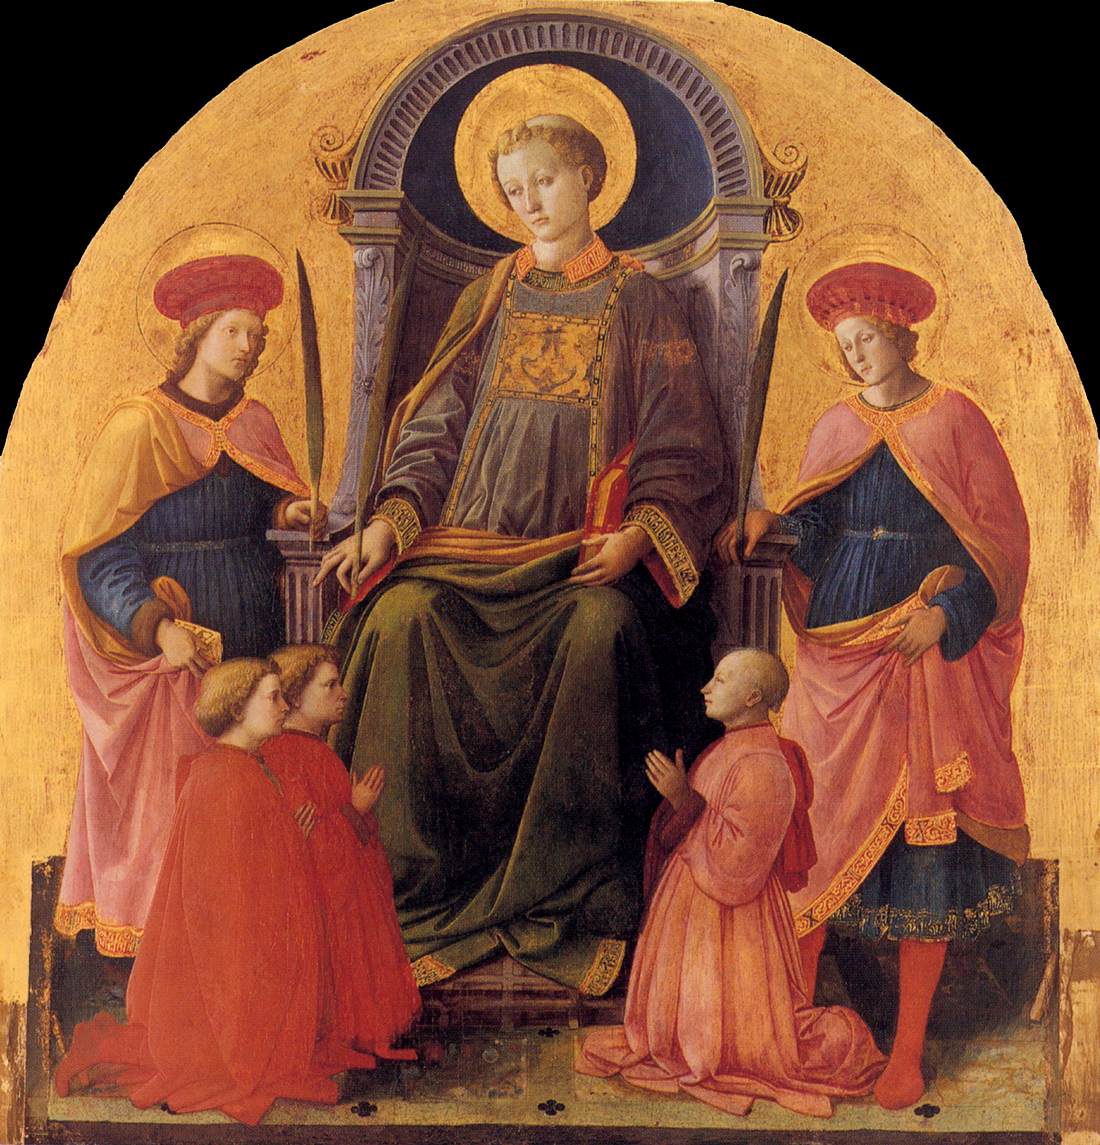 סן לורנצו התנשא עם הקדושים והתורמים